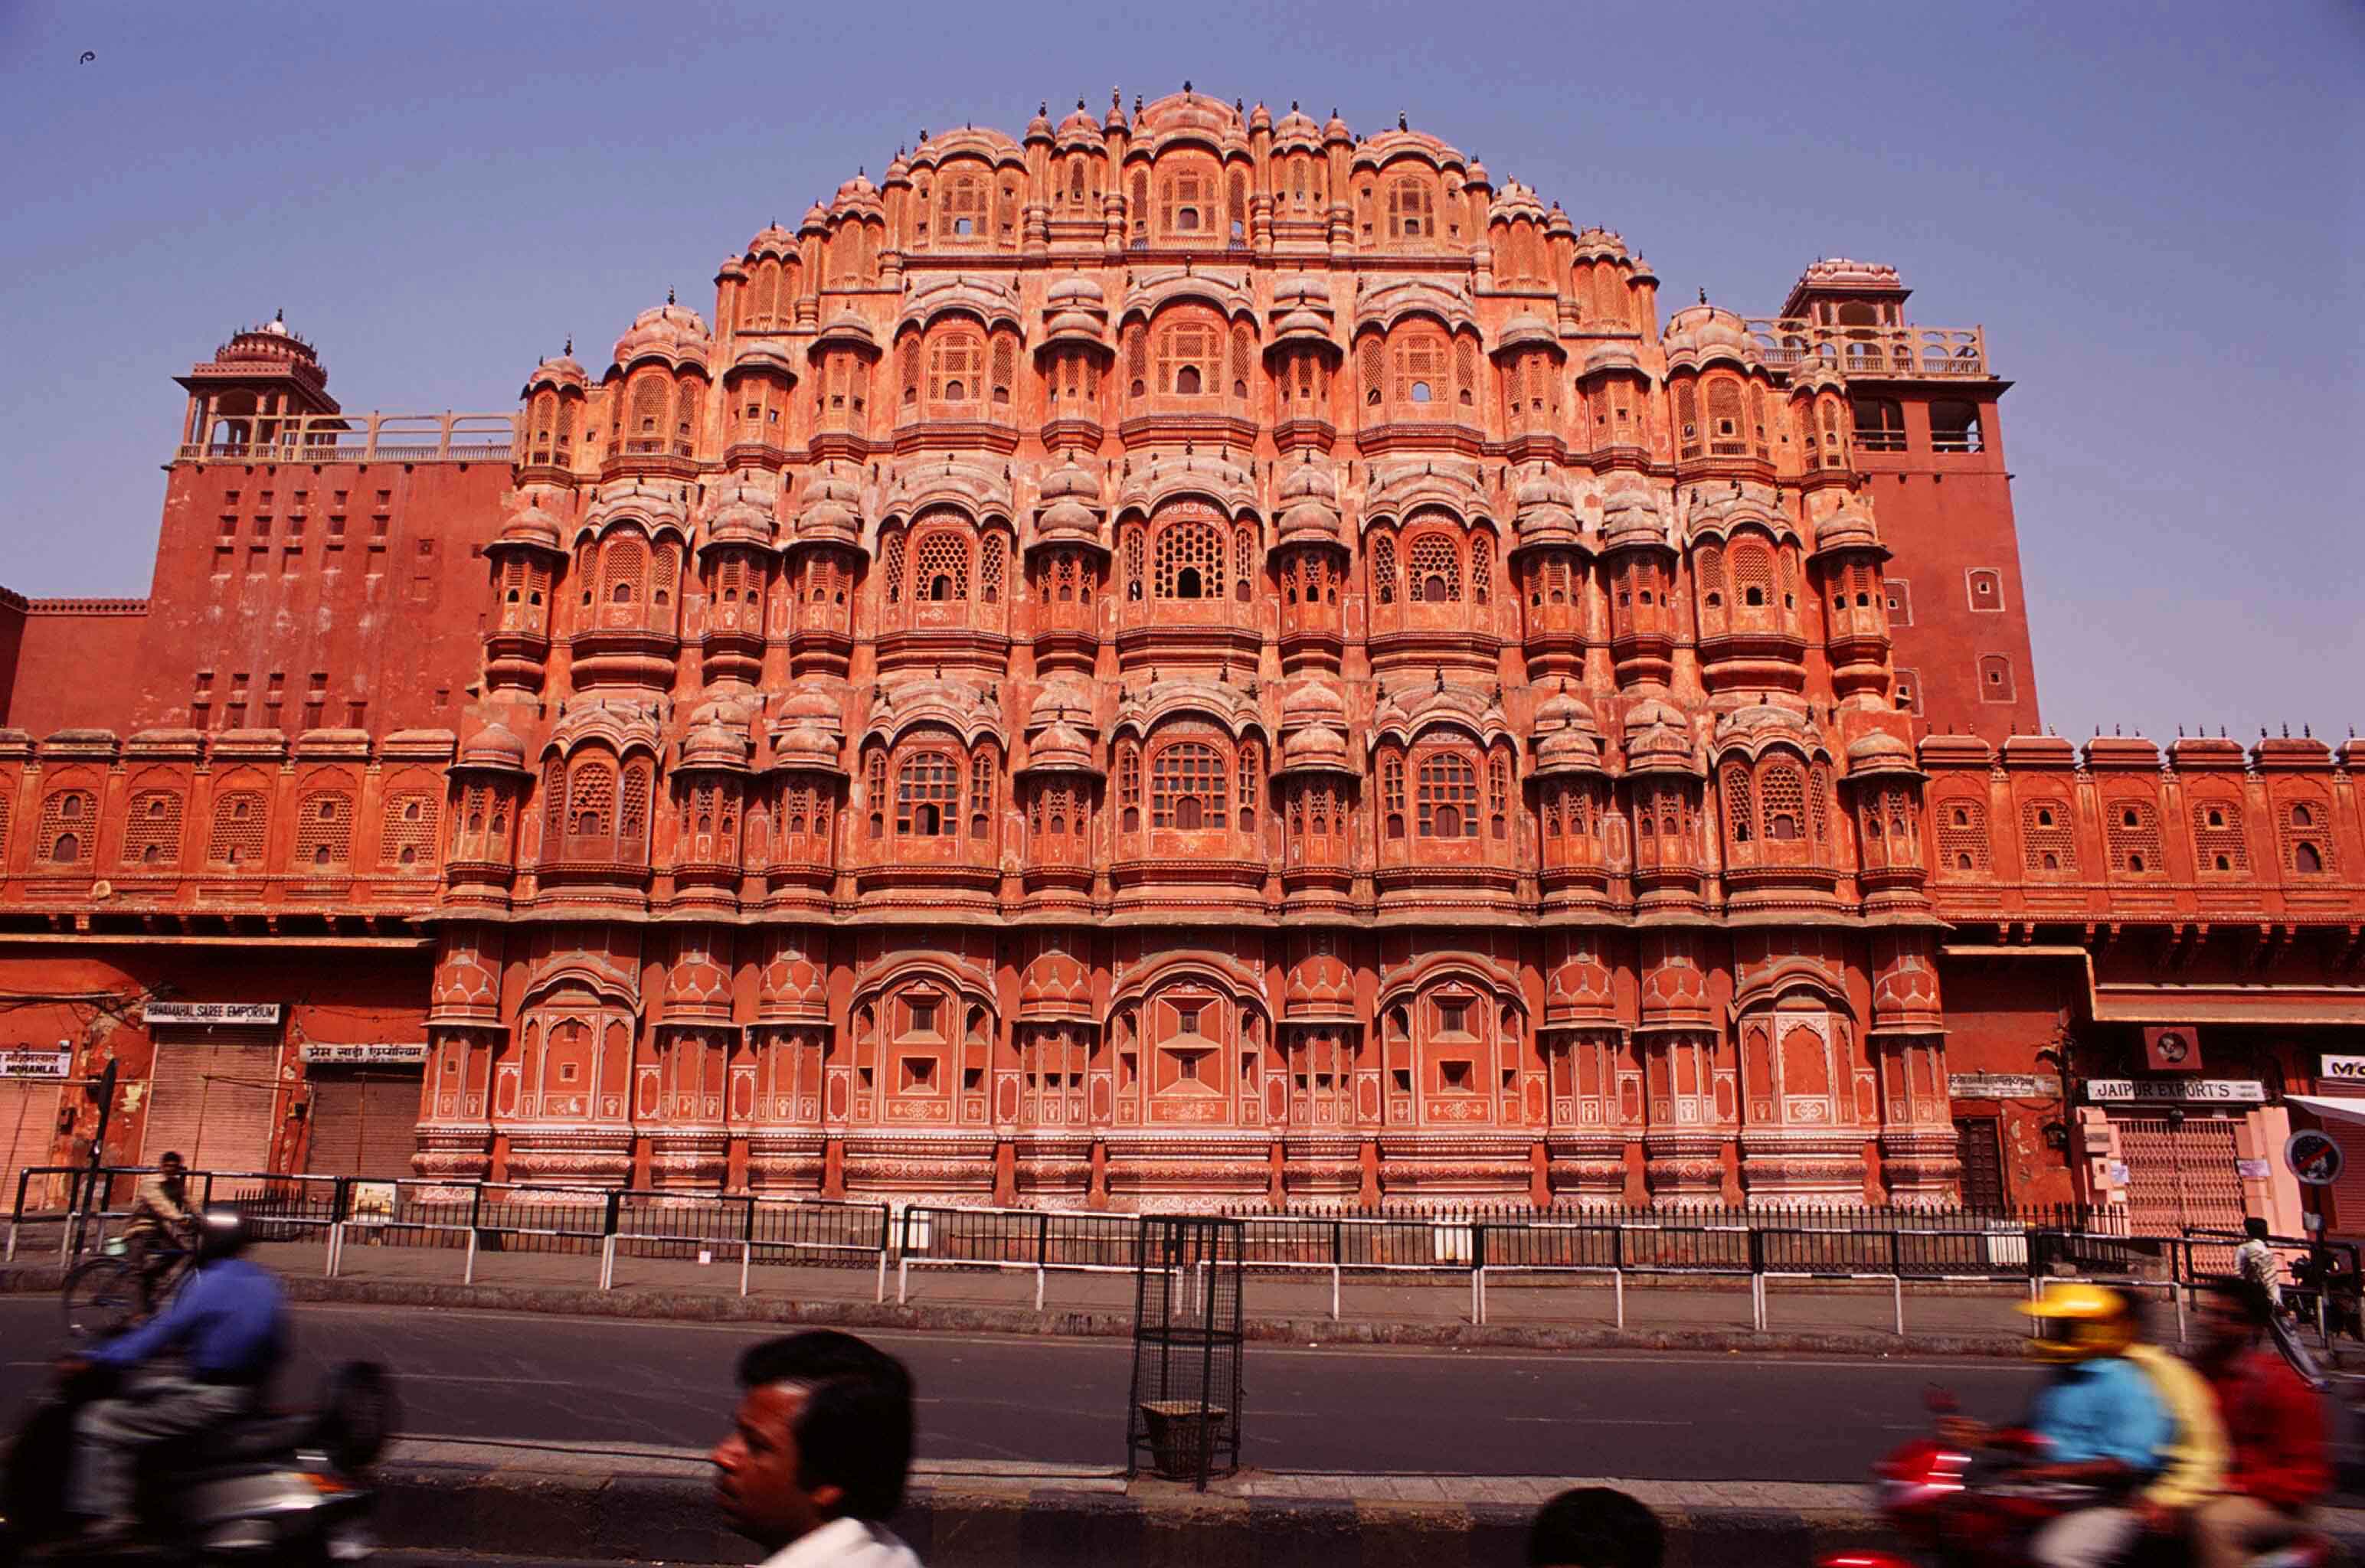 Hawa Mahal Palace in Jaipur - Video Reviews, Photos, History | HolidayIQ